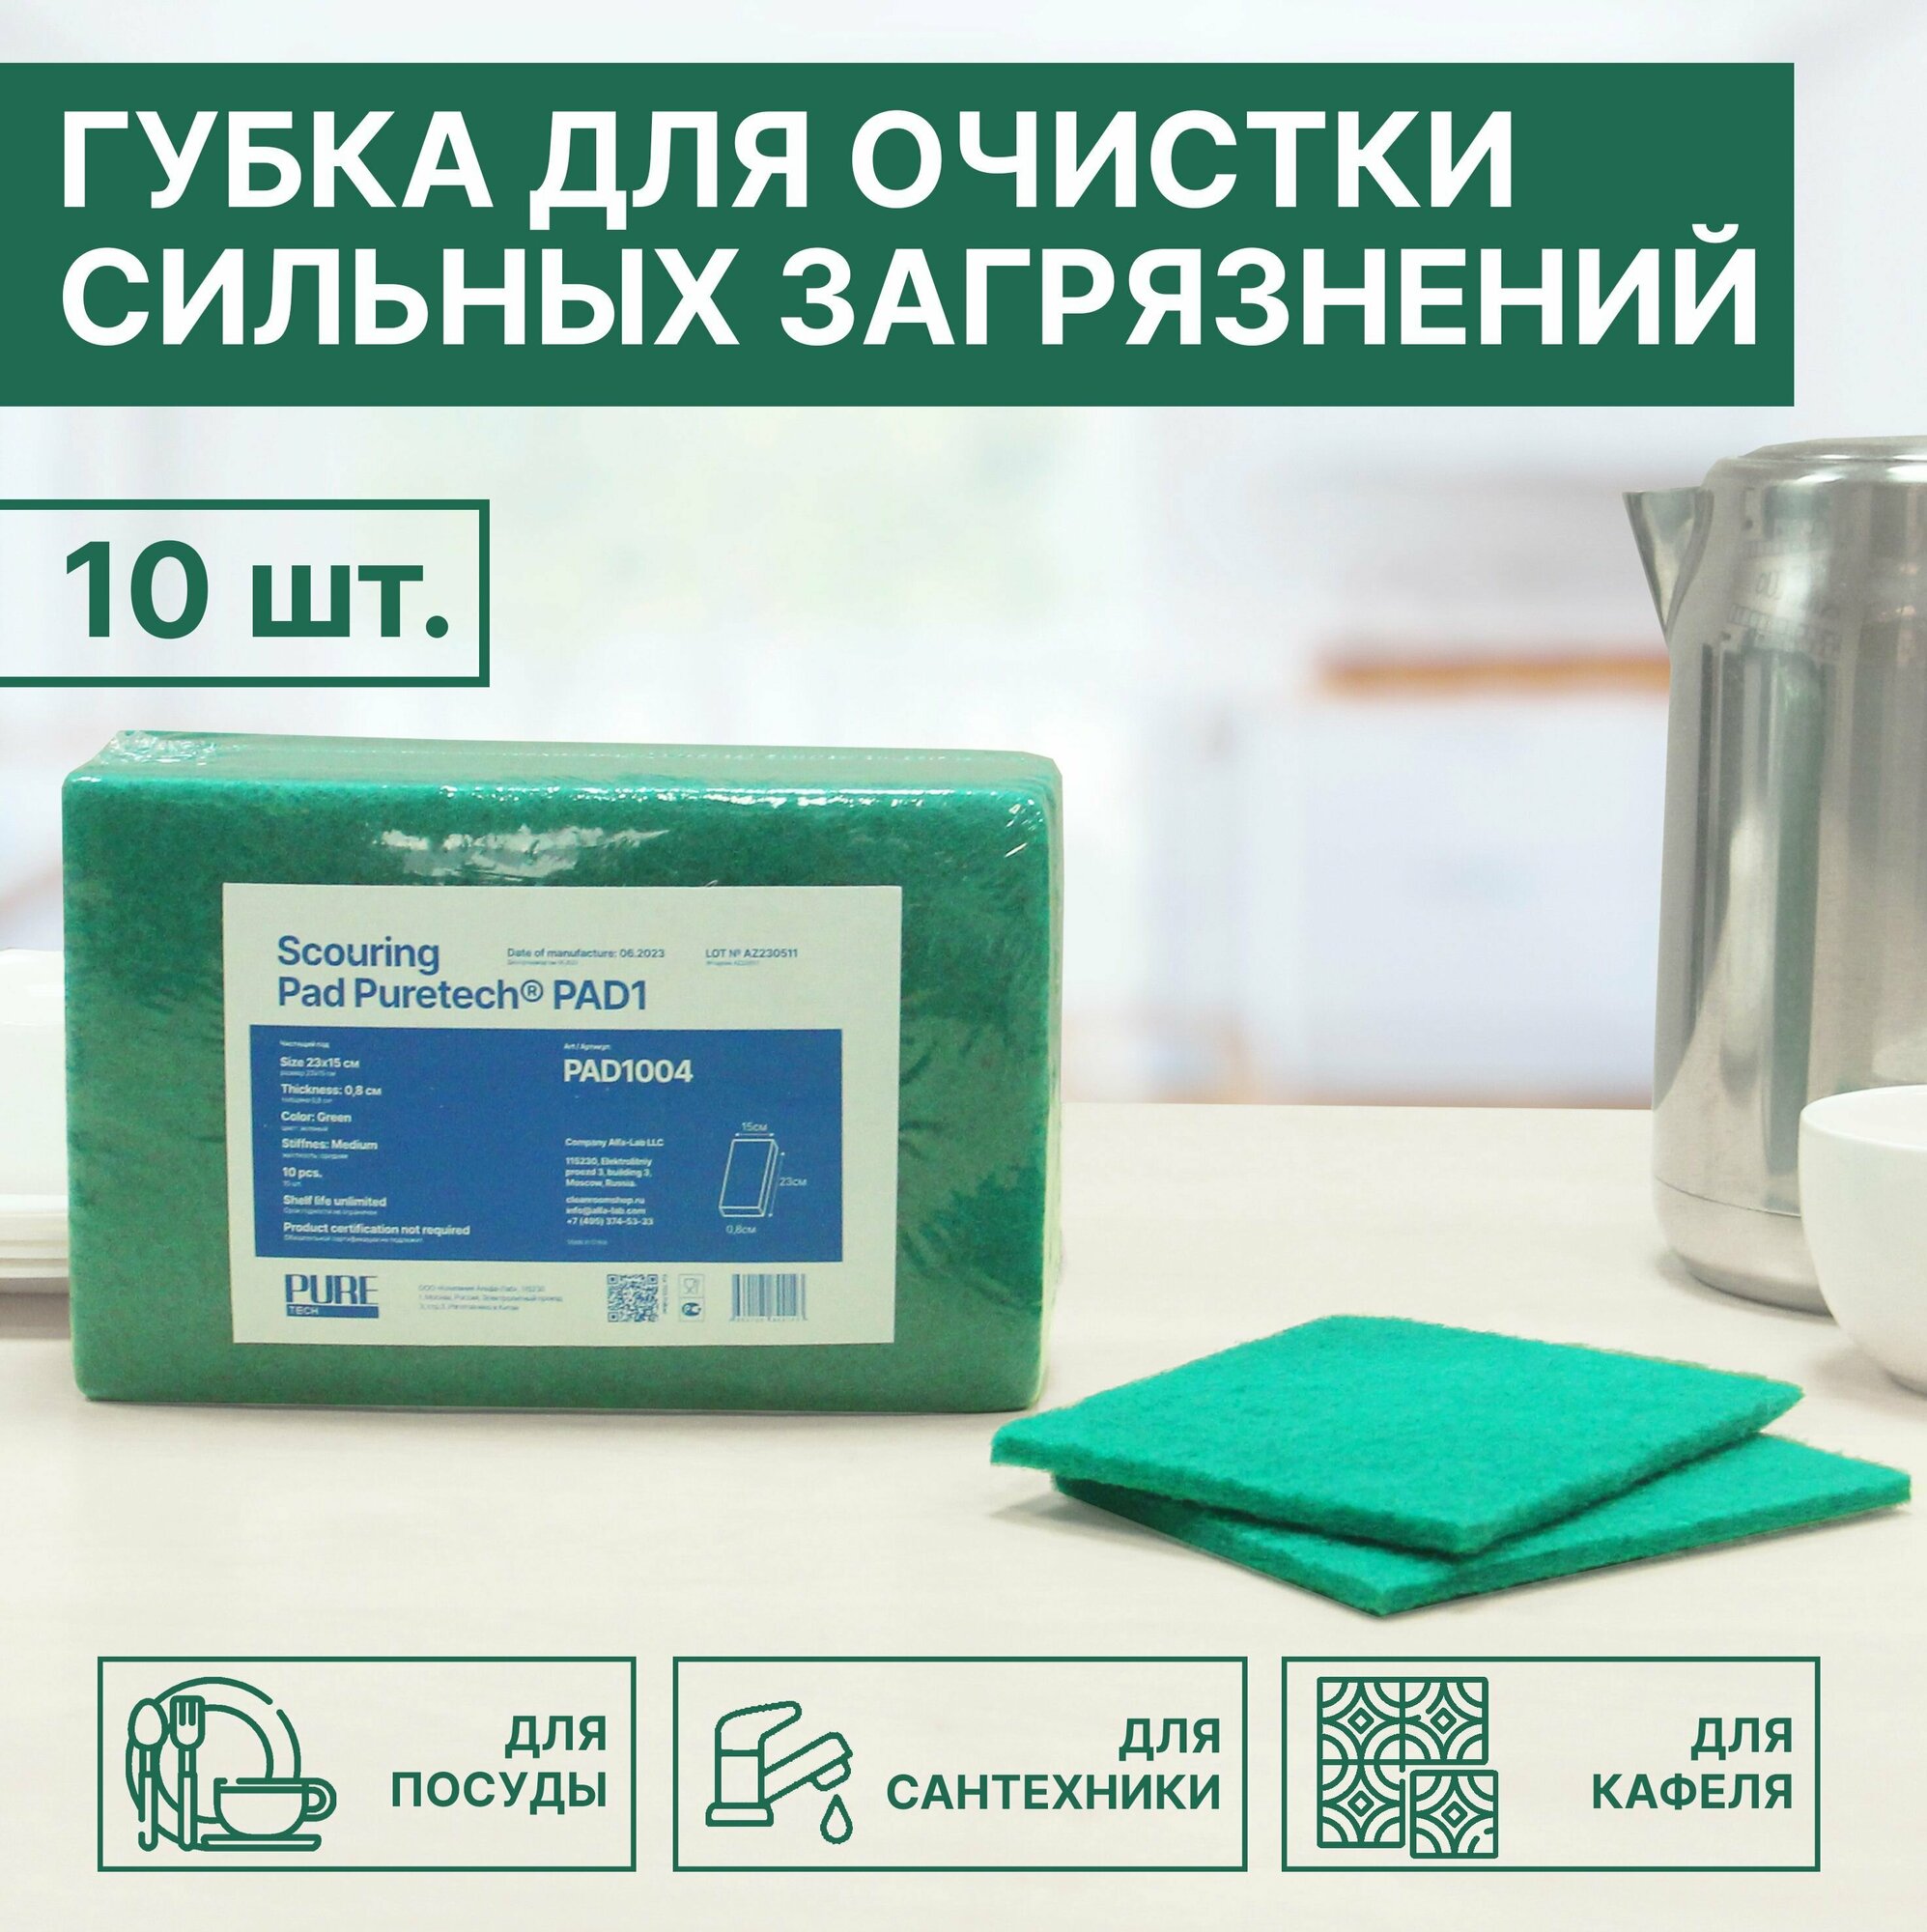 Губка для мытья посуды ручной пад для уборки абразив для сильных загрязнений зеленый средней жесткости 10шт/упак Puretech PAD1004